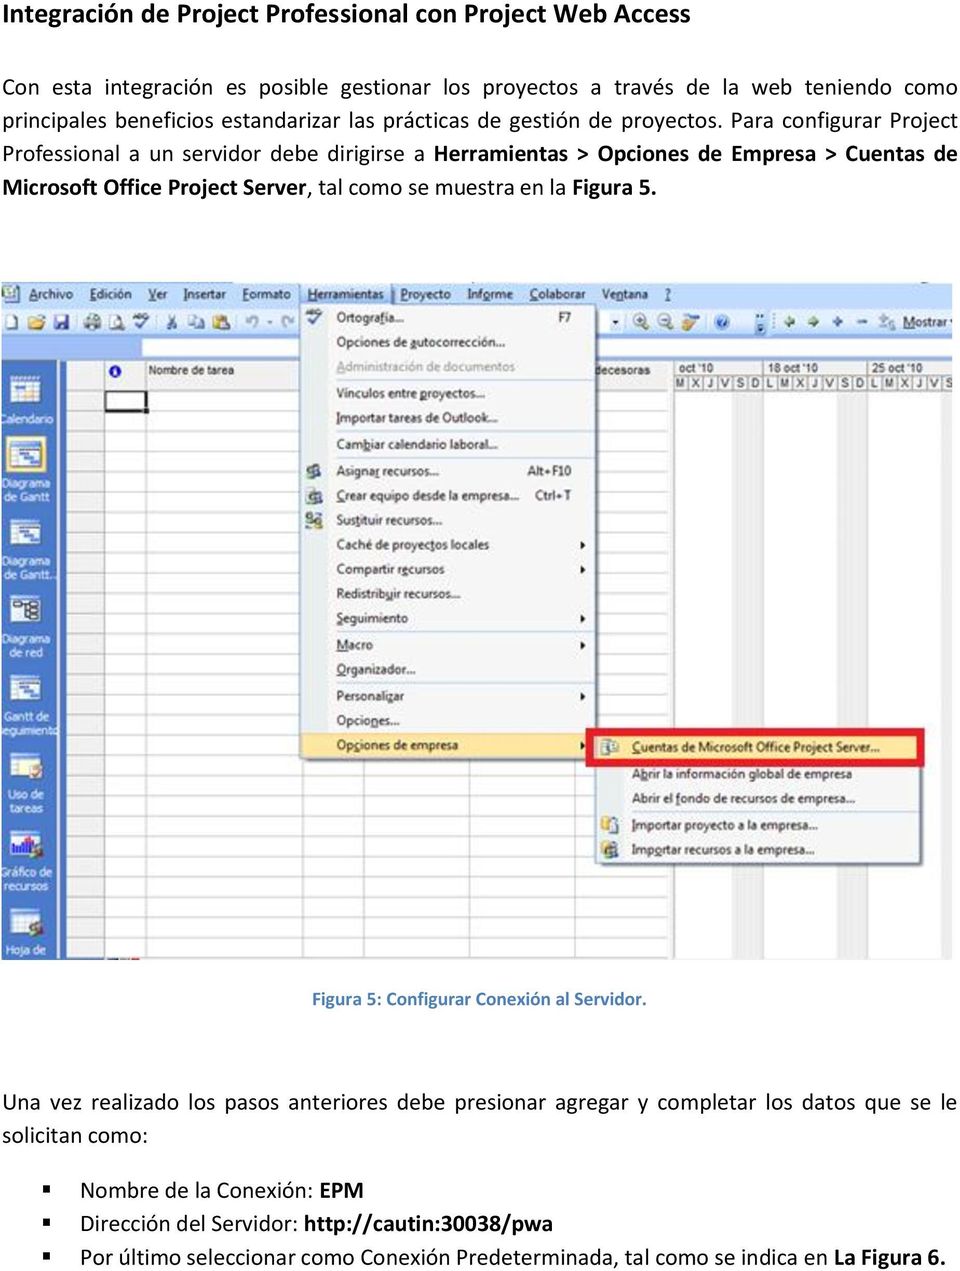 Para configurar Project Professional a un servidor debe dirigirse a Herramientas > Opciones de Empresa > Cuentas de Microsoft Office Project Server, tal como se muestra en la